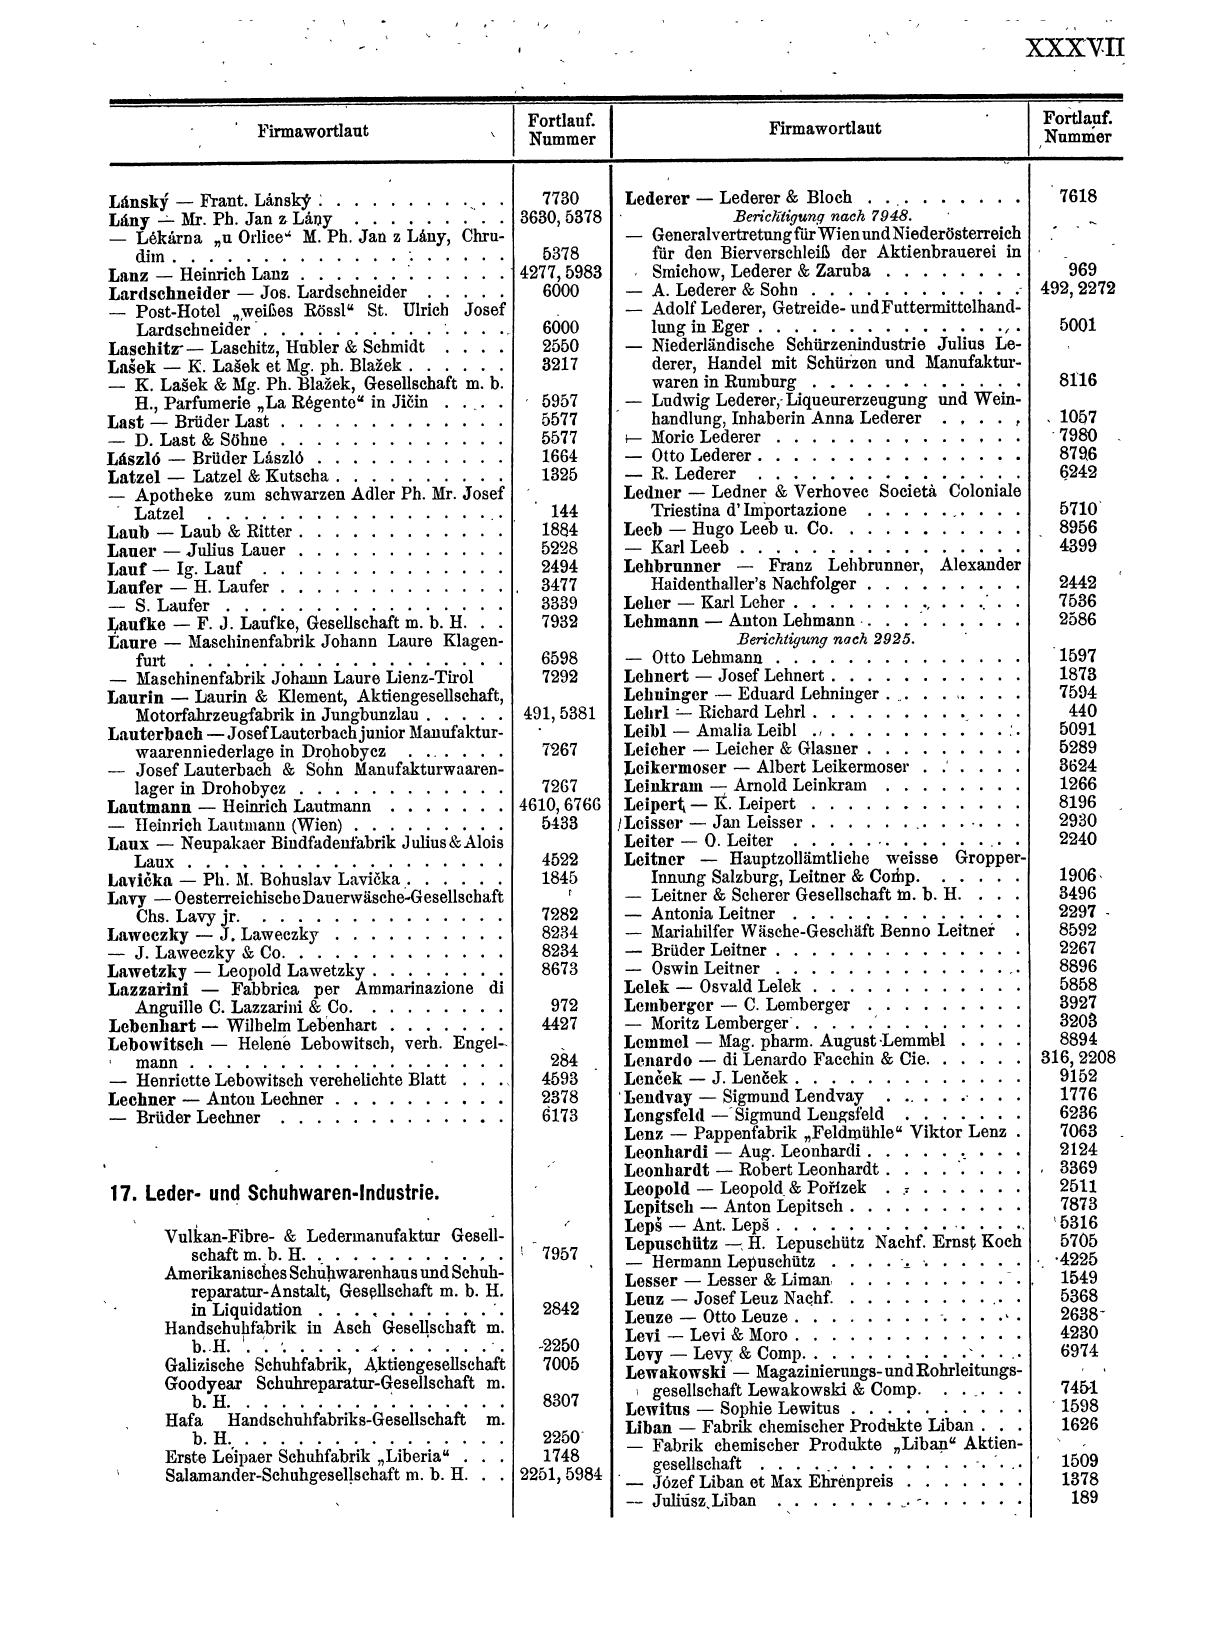 Zentralblatt für die Eintragungen in das Handelsregister 1913, Teil 1 - Seite 45